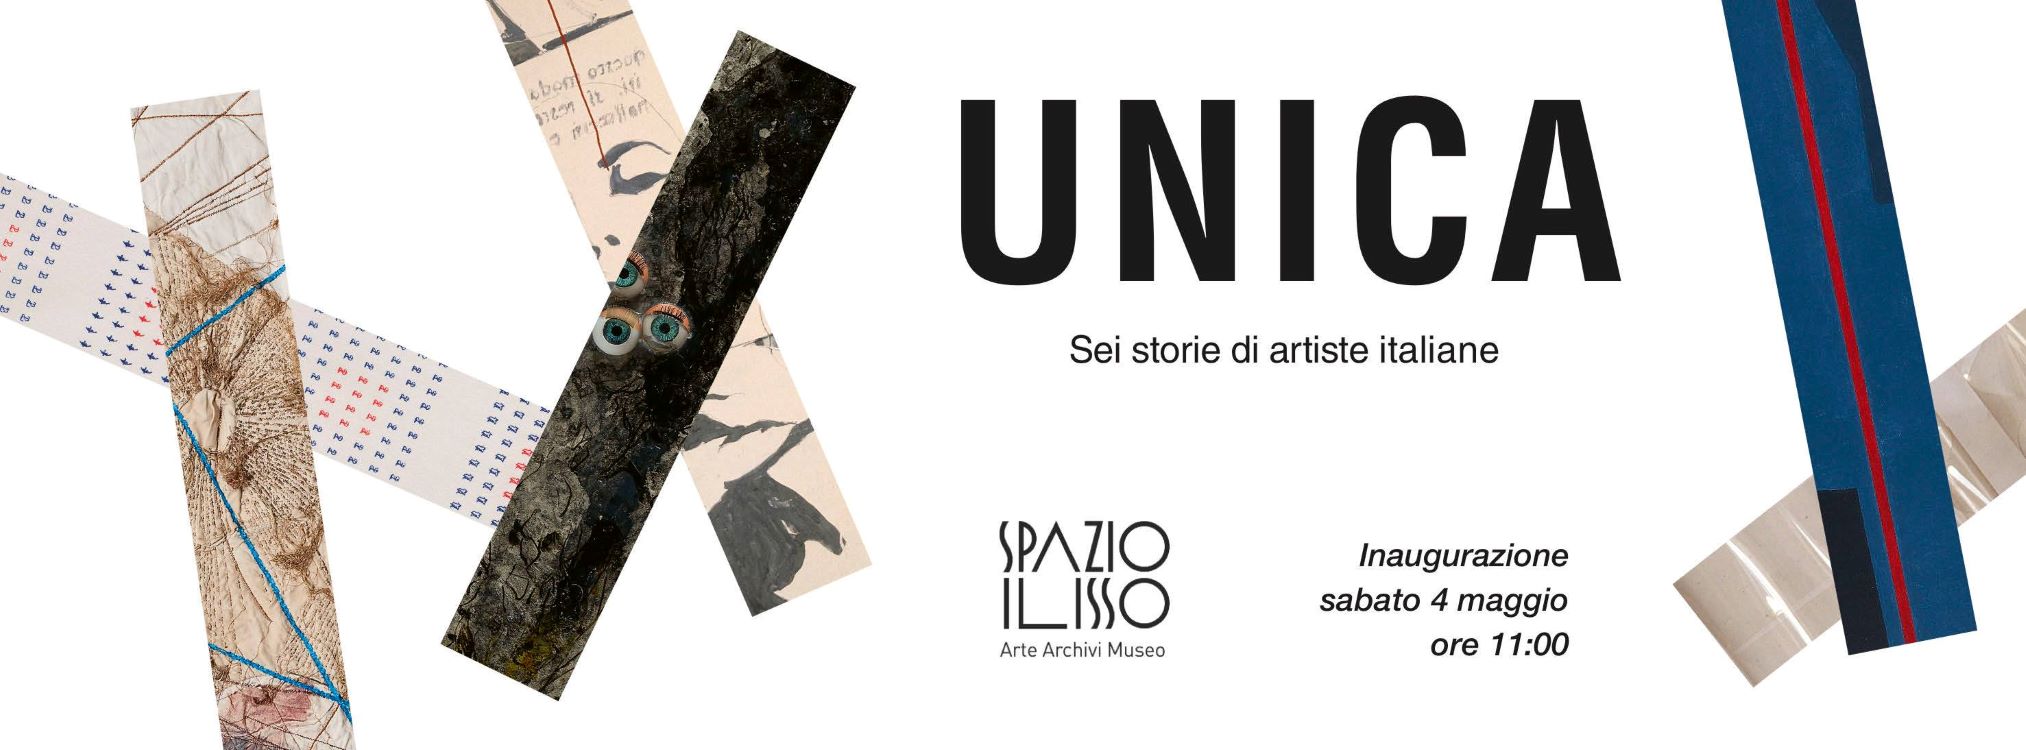 Nuoro, Spazio Ilisso: domani l’inaugurazione della mostra “Unica. Sei storie di artiste italiane”